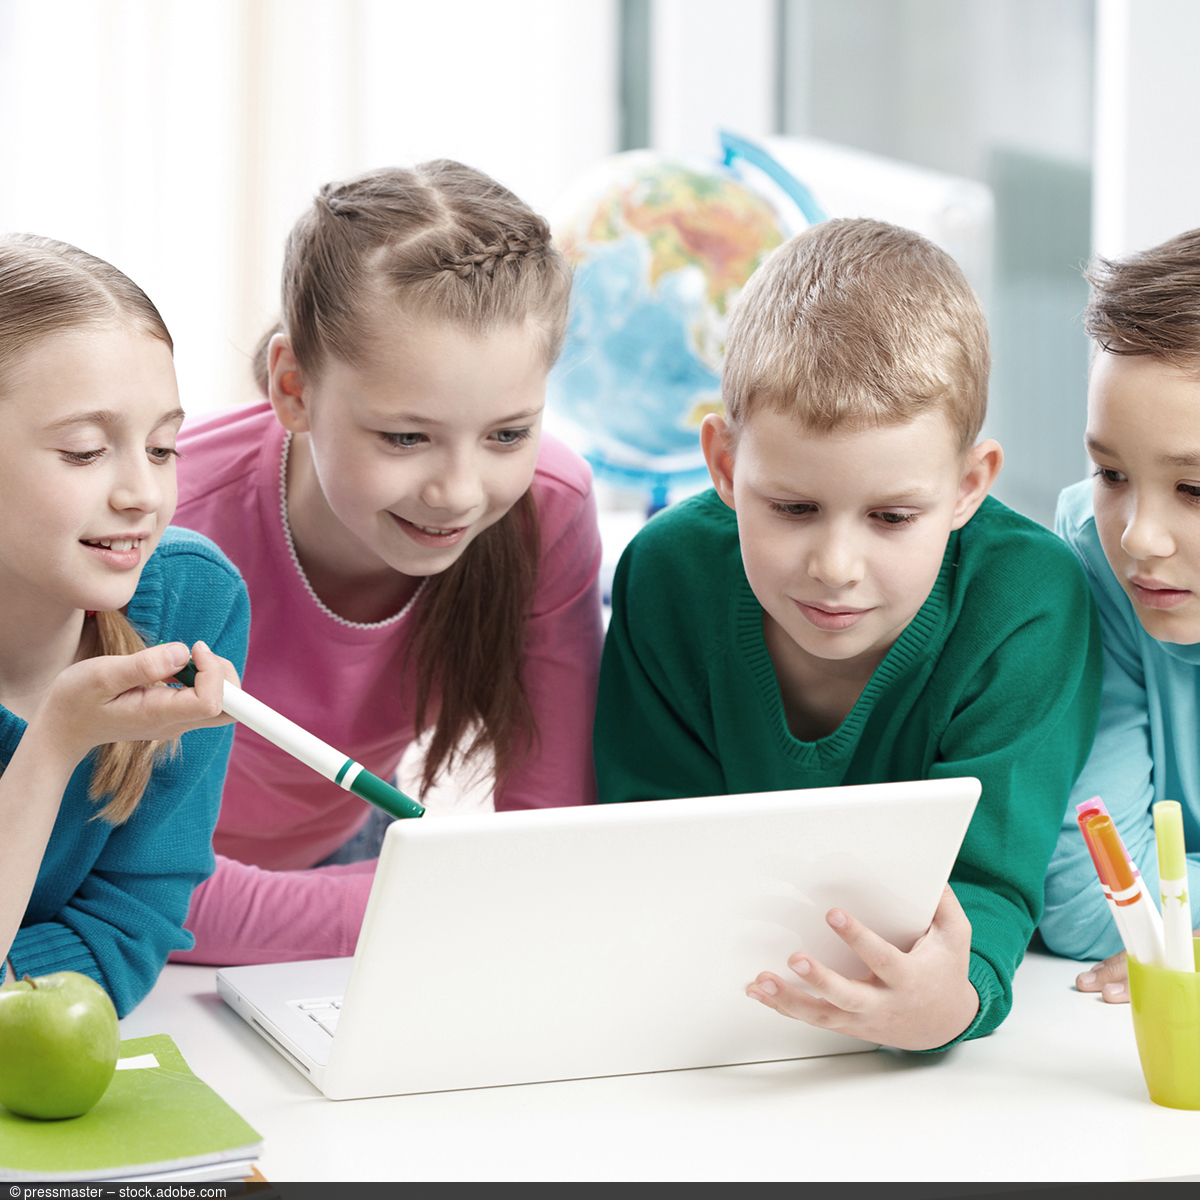 Vier Kinder spielen miteinander und schauen auf einen Laptop